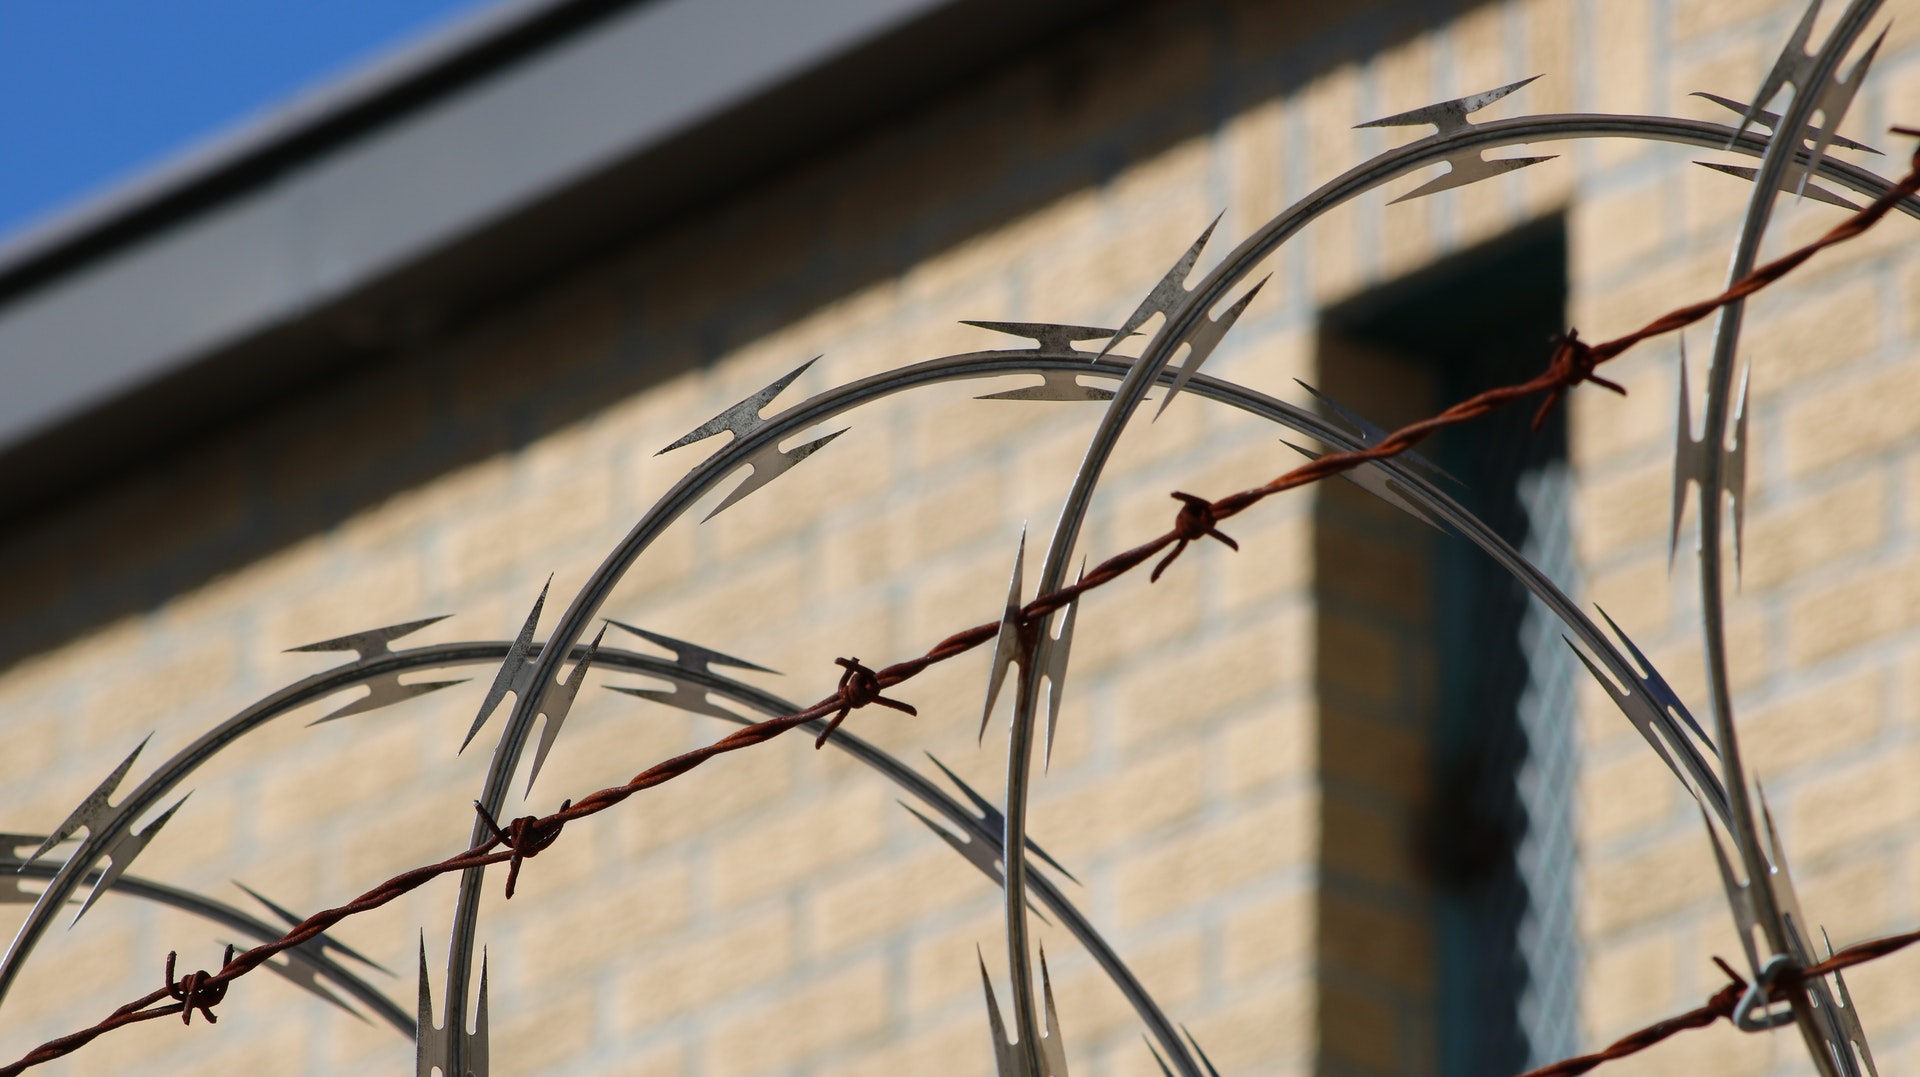 prison wire